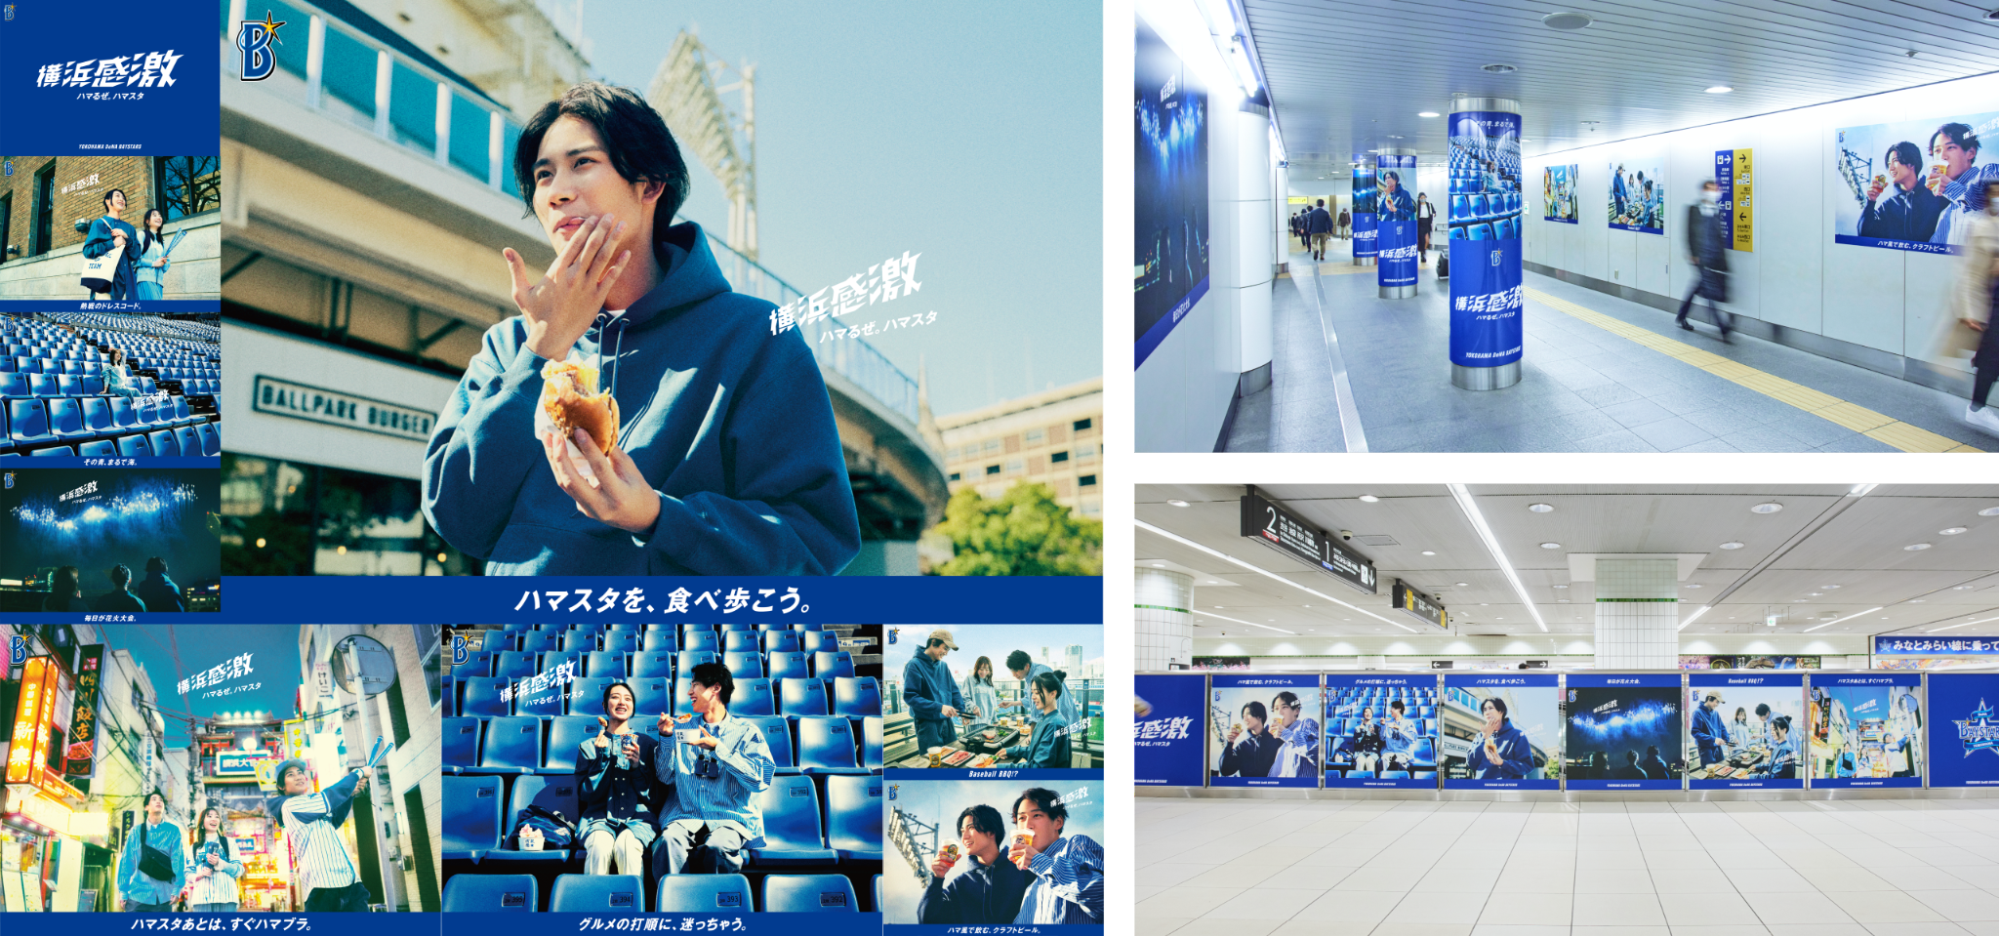 「横浜感激」のビジュアル9枚と、掲示されている様子の写真。ハンバーガーを食べながら口を拭う人や、スタジアムのベンチに座った2人の写真など。